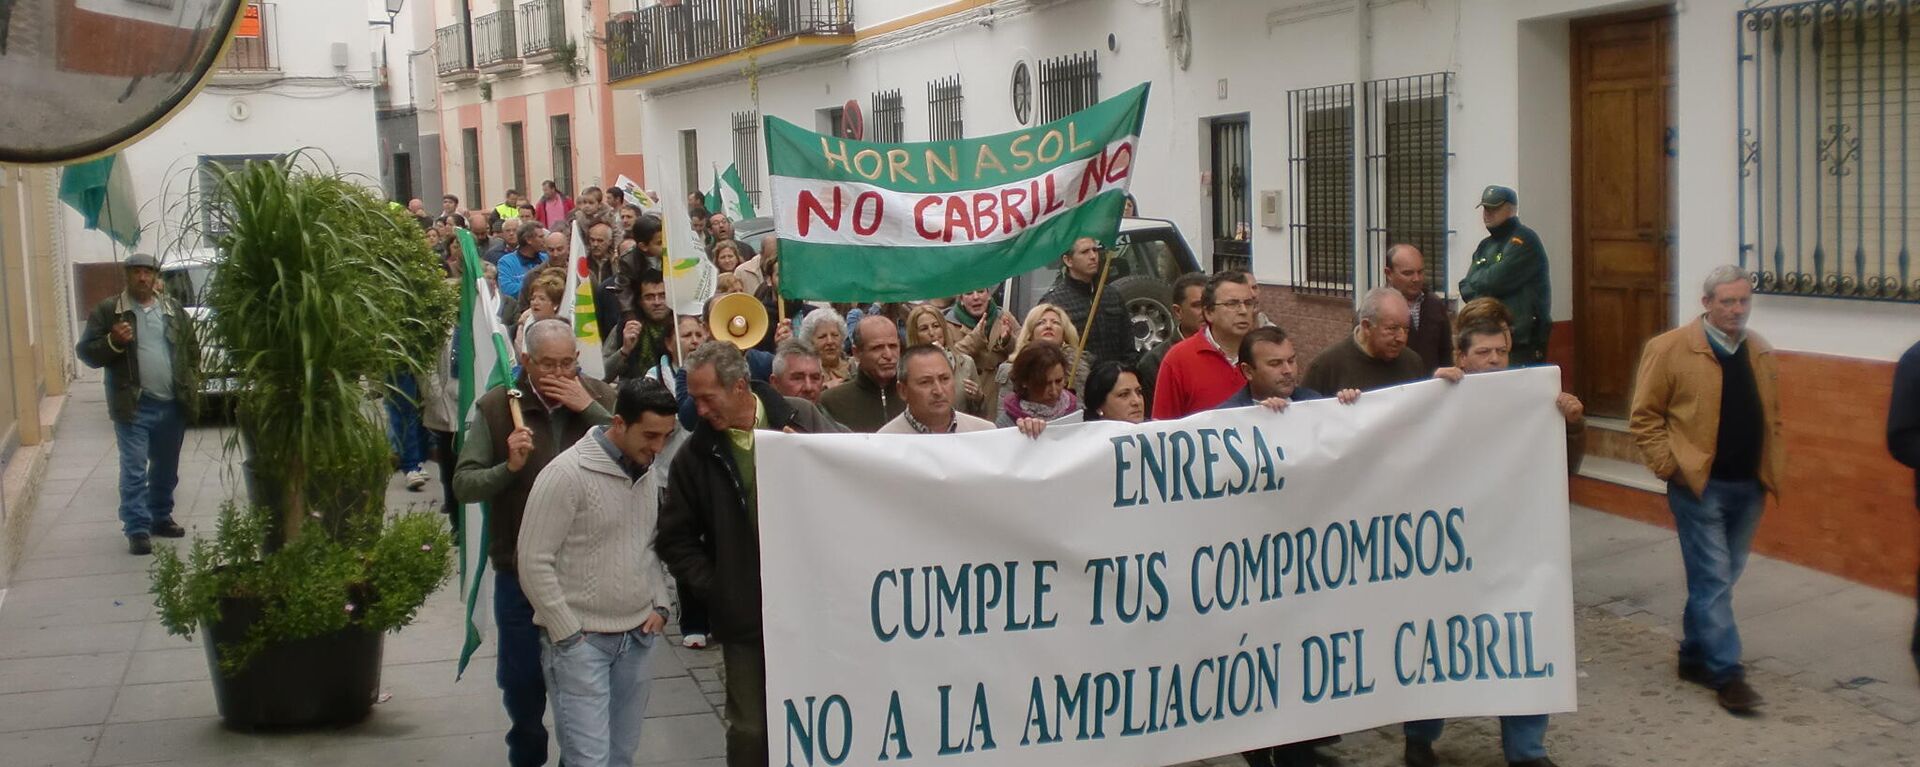 Un manifestación en Hornachuelos contra El Cabril  - Sputnik Mundo, 1920, 21.04.2021